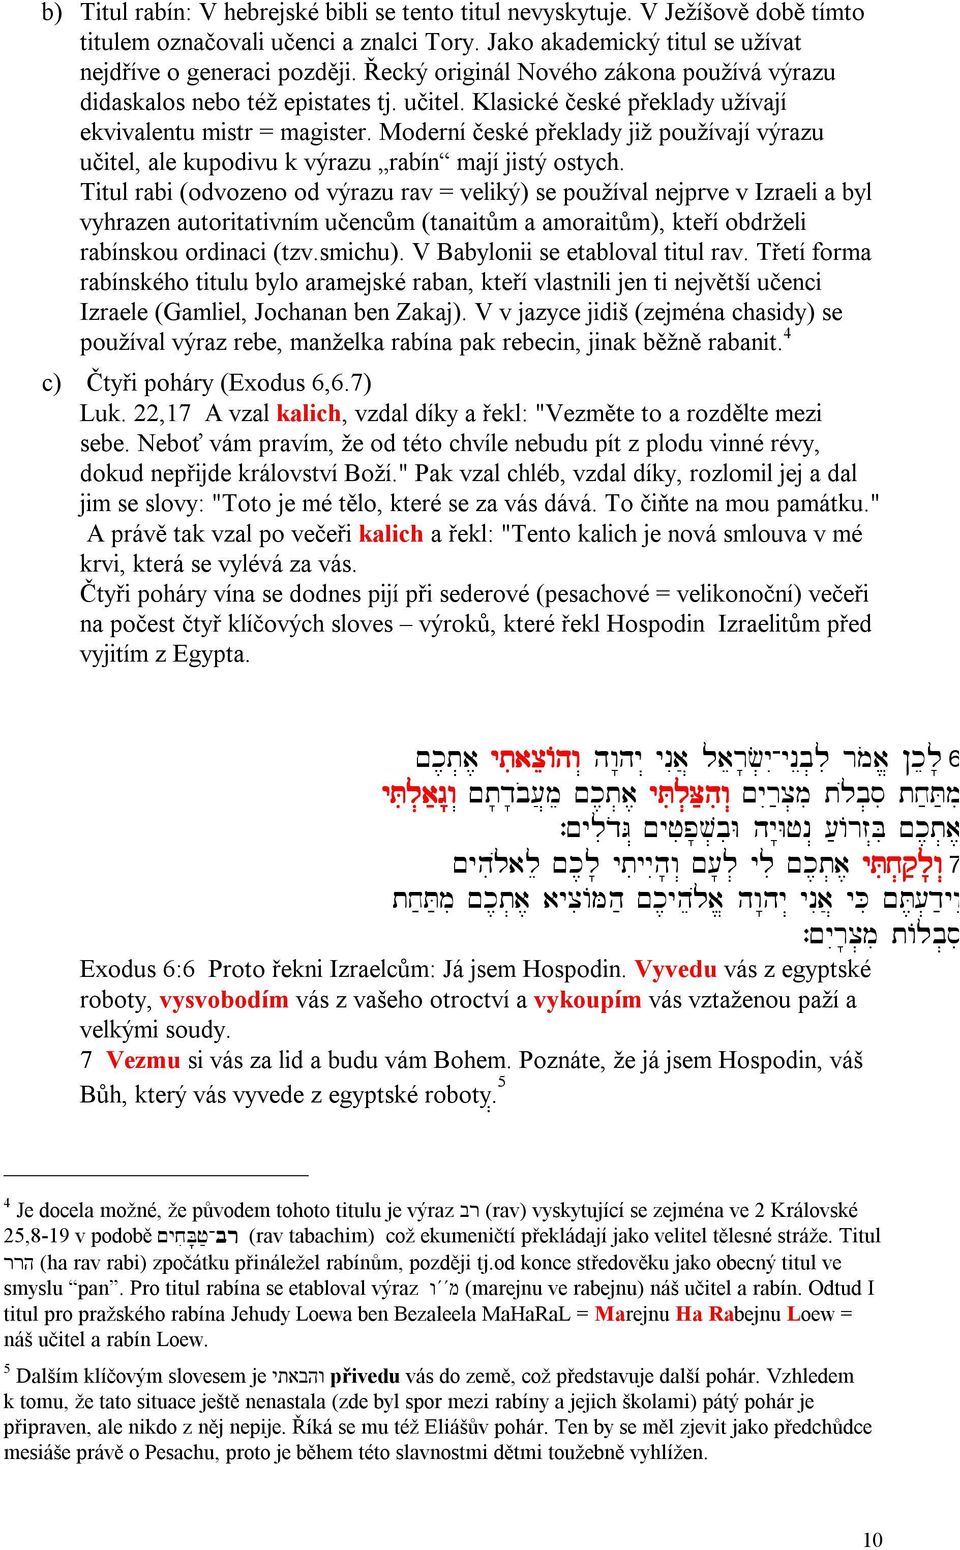 Moderní české překlady již používají výrazu učitel, ale kupodivu k výrazu rabín mají jistý ostych.